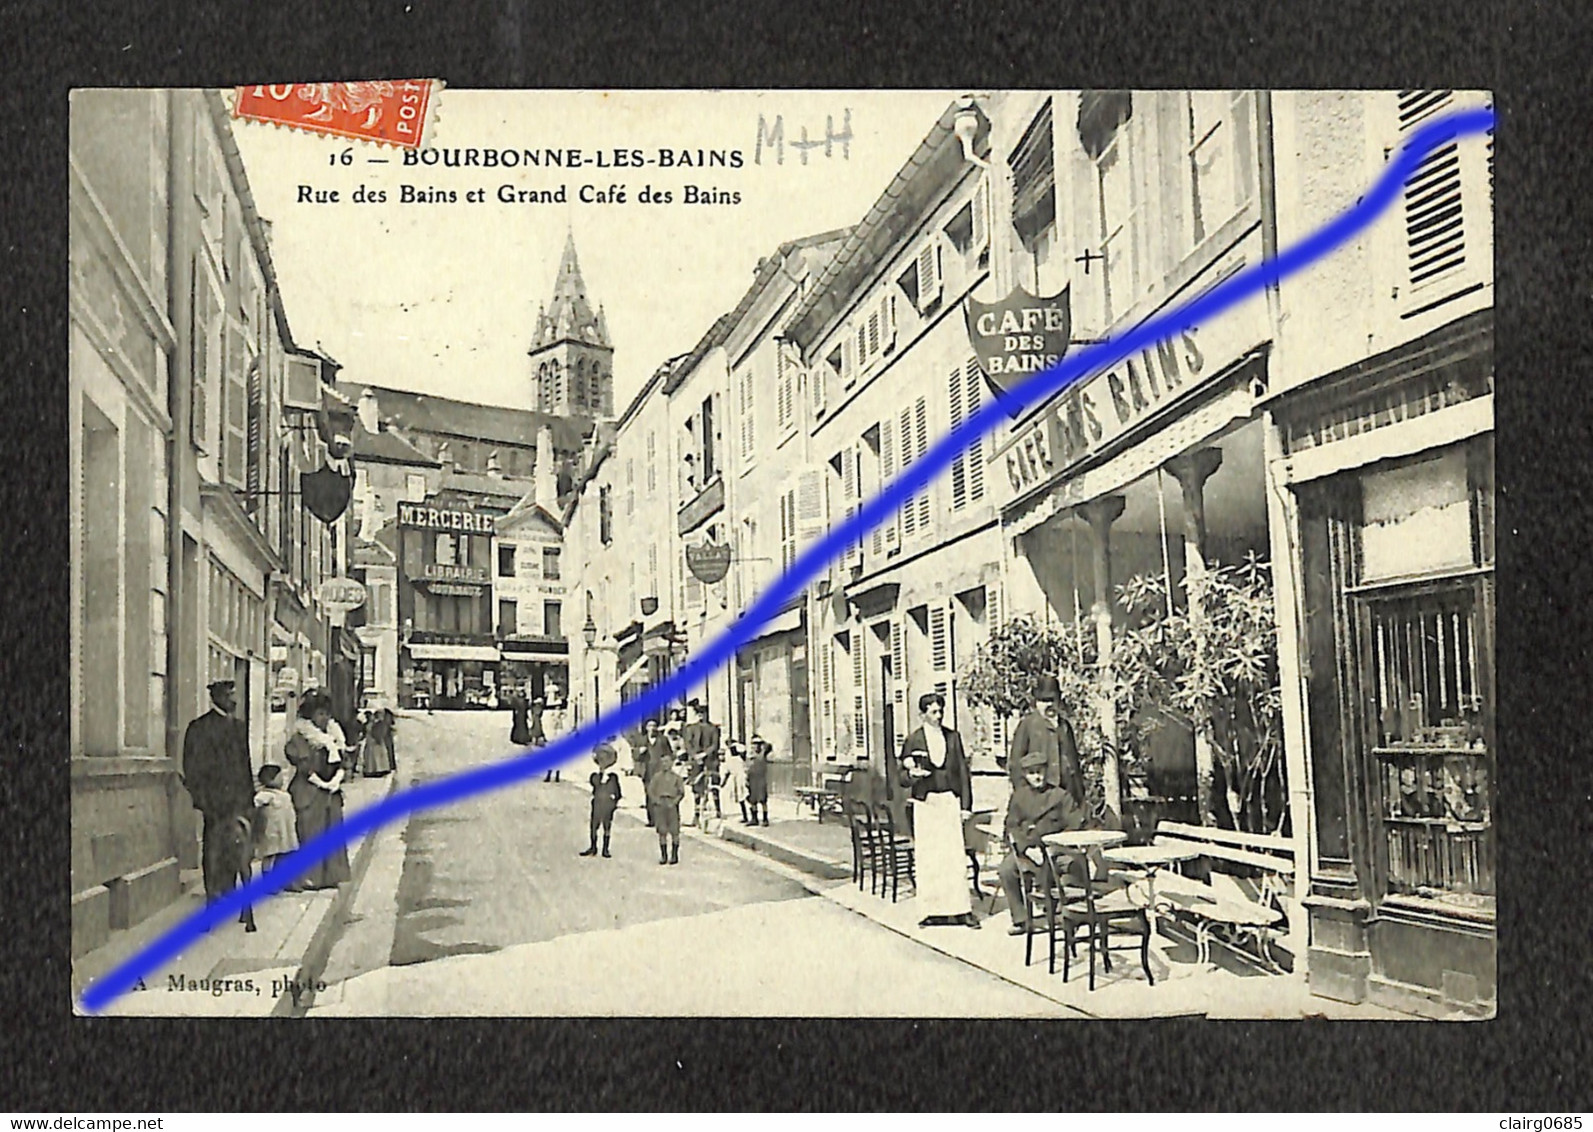 52 - BOURBONNE LES BAINS - Rue Des Bains Et Grand Café Des Bains - 1909 - Bourbonne Les Bains